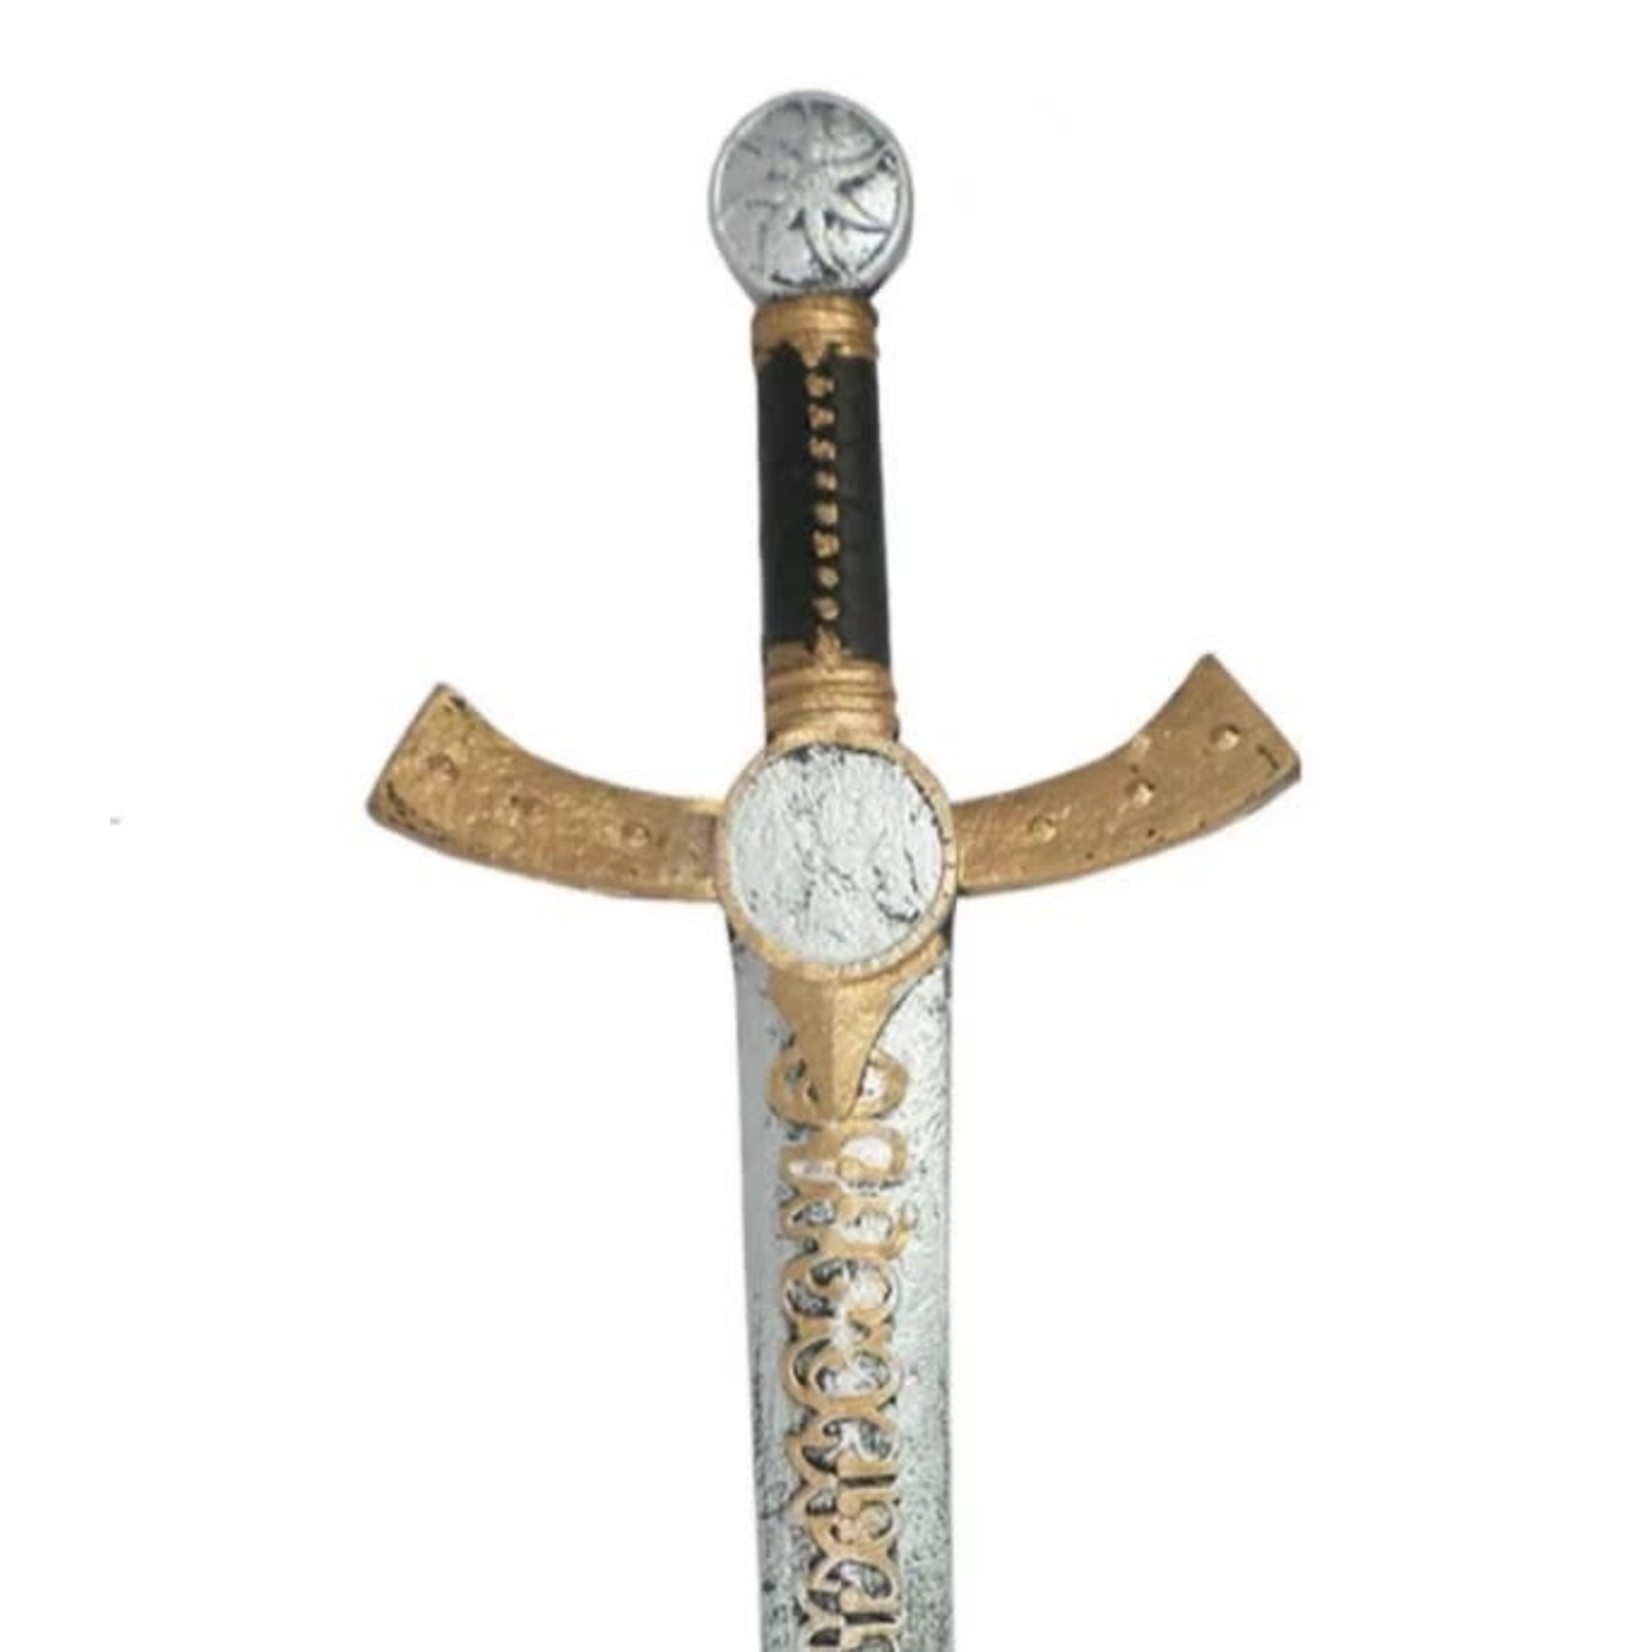 Great Pretenders GREAT PRETENDERS - Knight's sword (2 models)